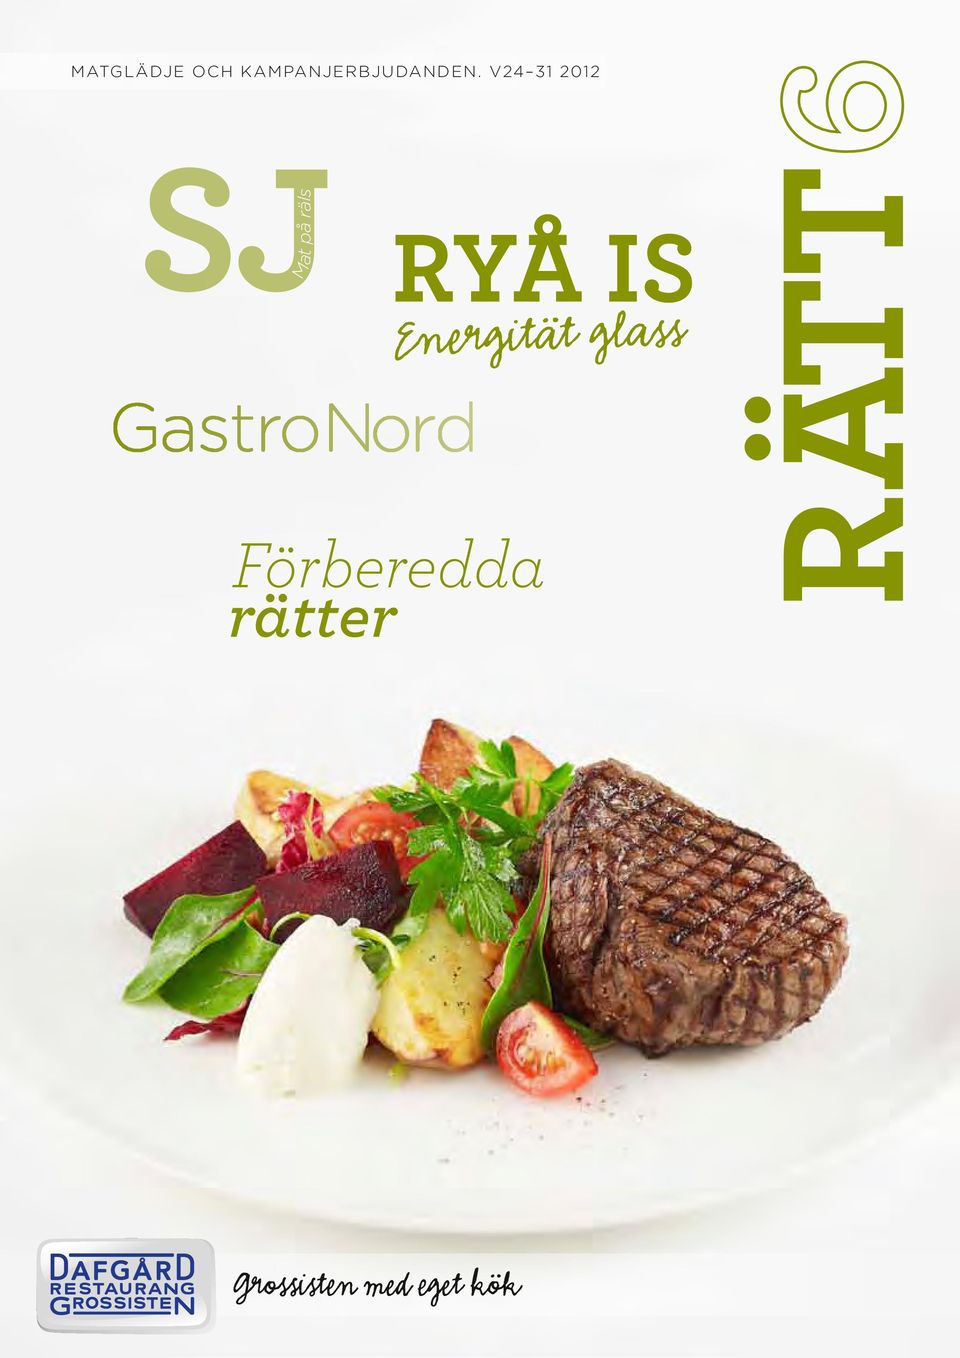 V24 31 2012 Mat på räls RYÅ